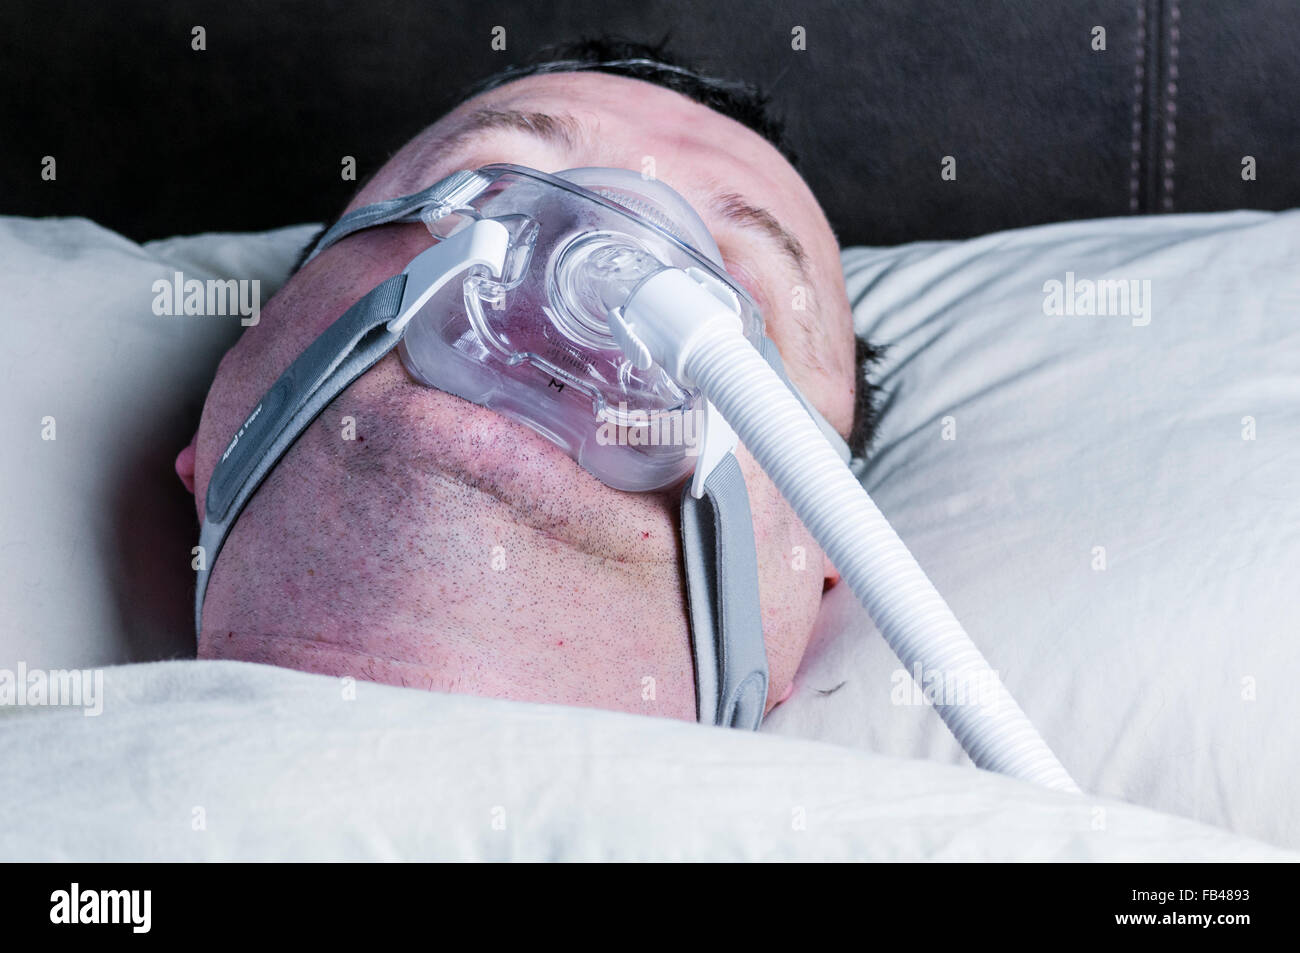 Un excès d'âge moyen, un homme portant un masque CPAP pendant le sommeil dans le lit Banque D'Images